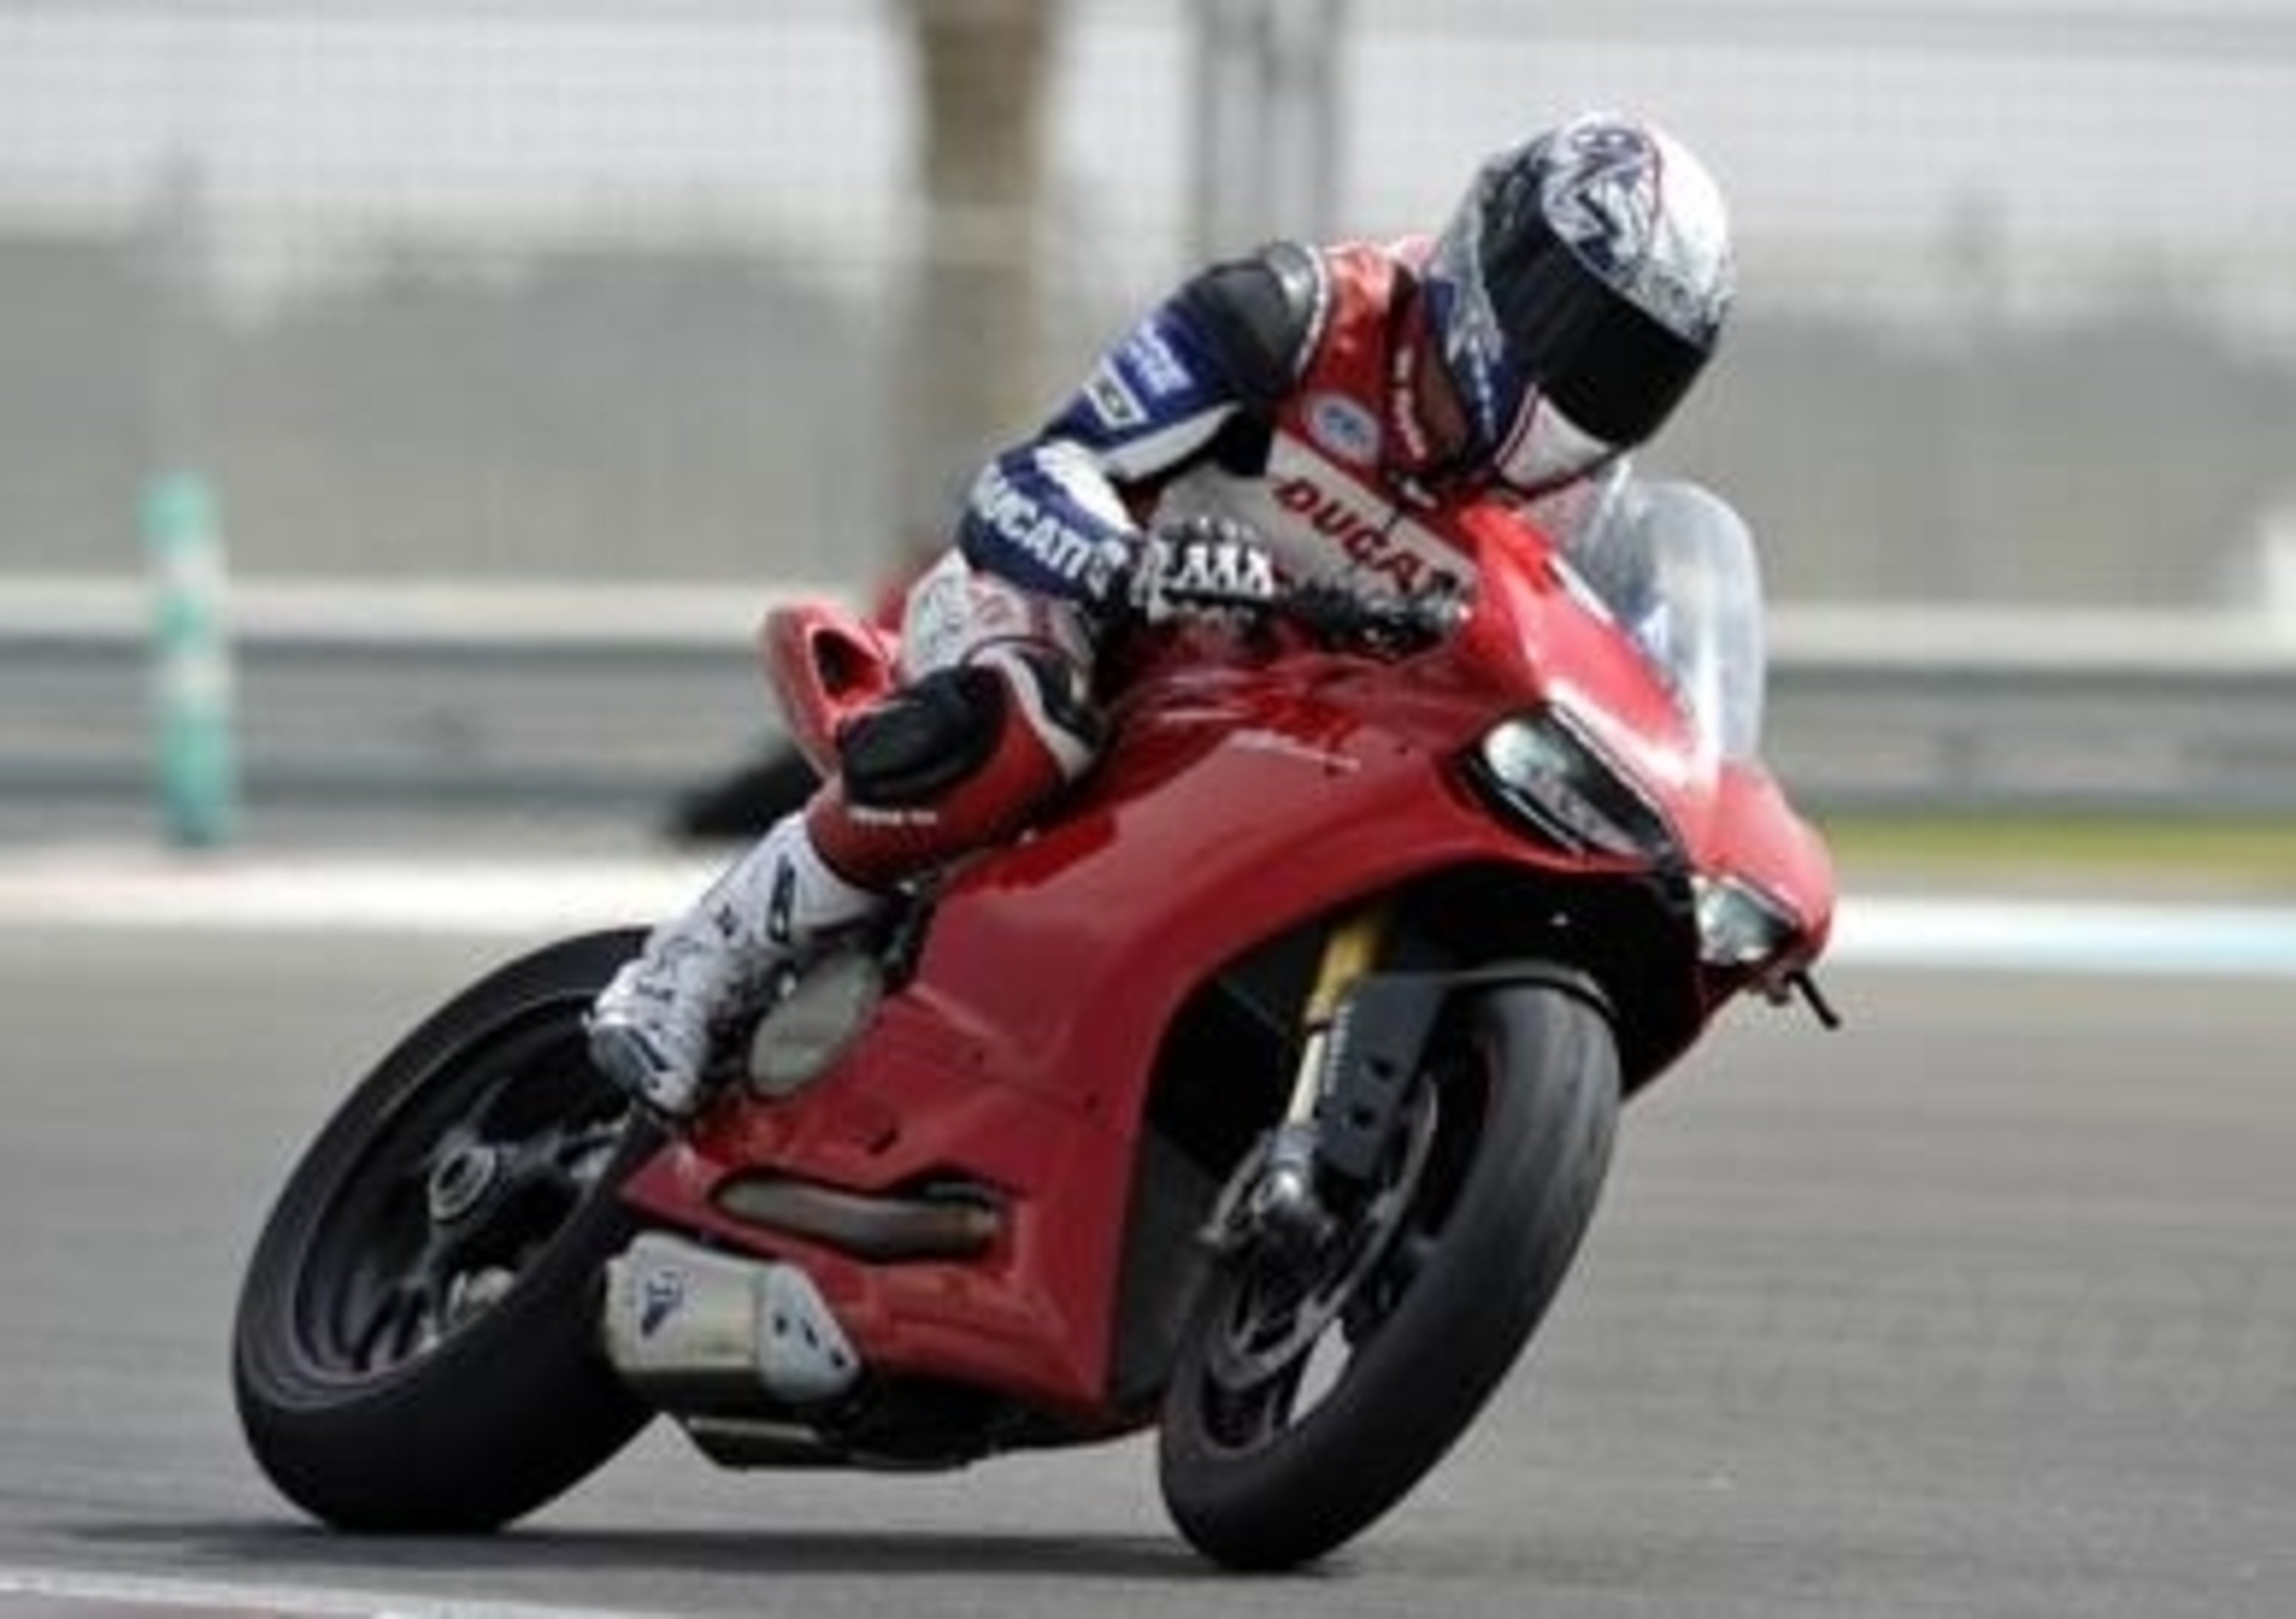 Troy Bayliss torna in pista con la Ducati Panigale. SBK? 